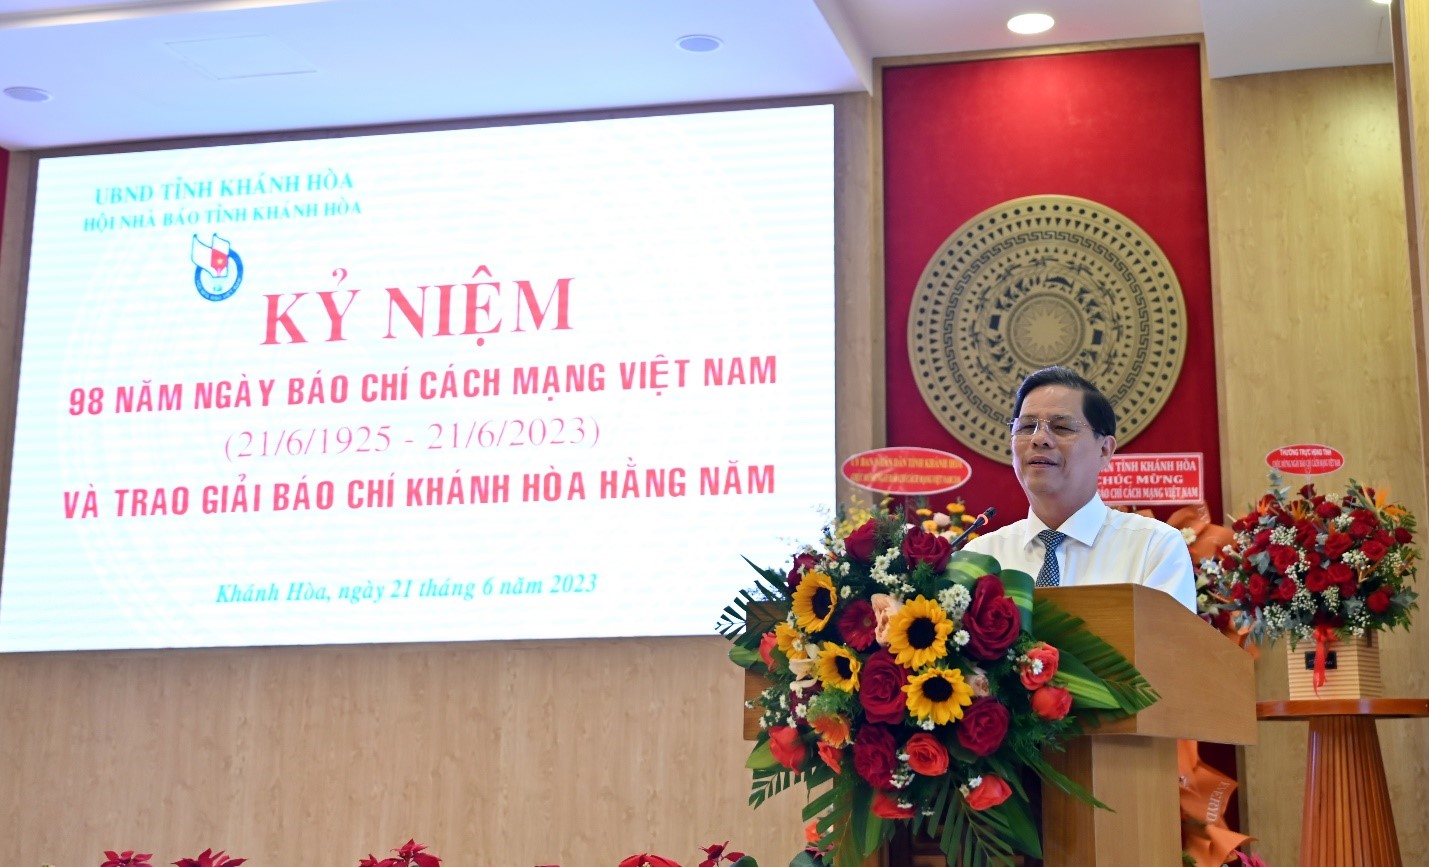 Ông Nguyễn Tấn Tuân - Phó Bí thư Tỉnh ủy, Chủ tịch UBND tỉnh; phát biểu chỉ đạo tại buổi lễ.